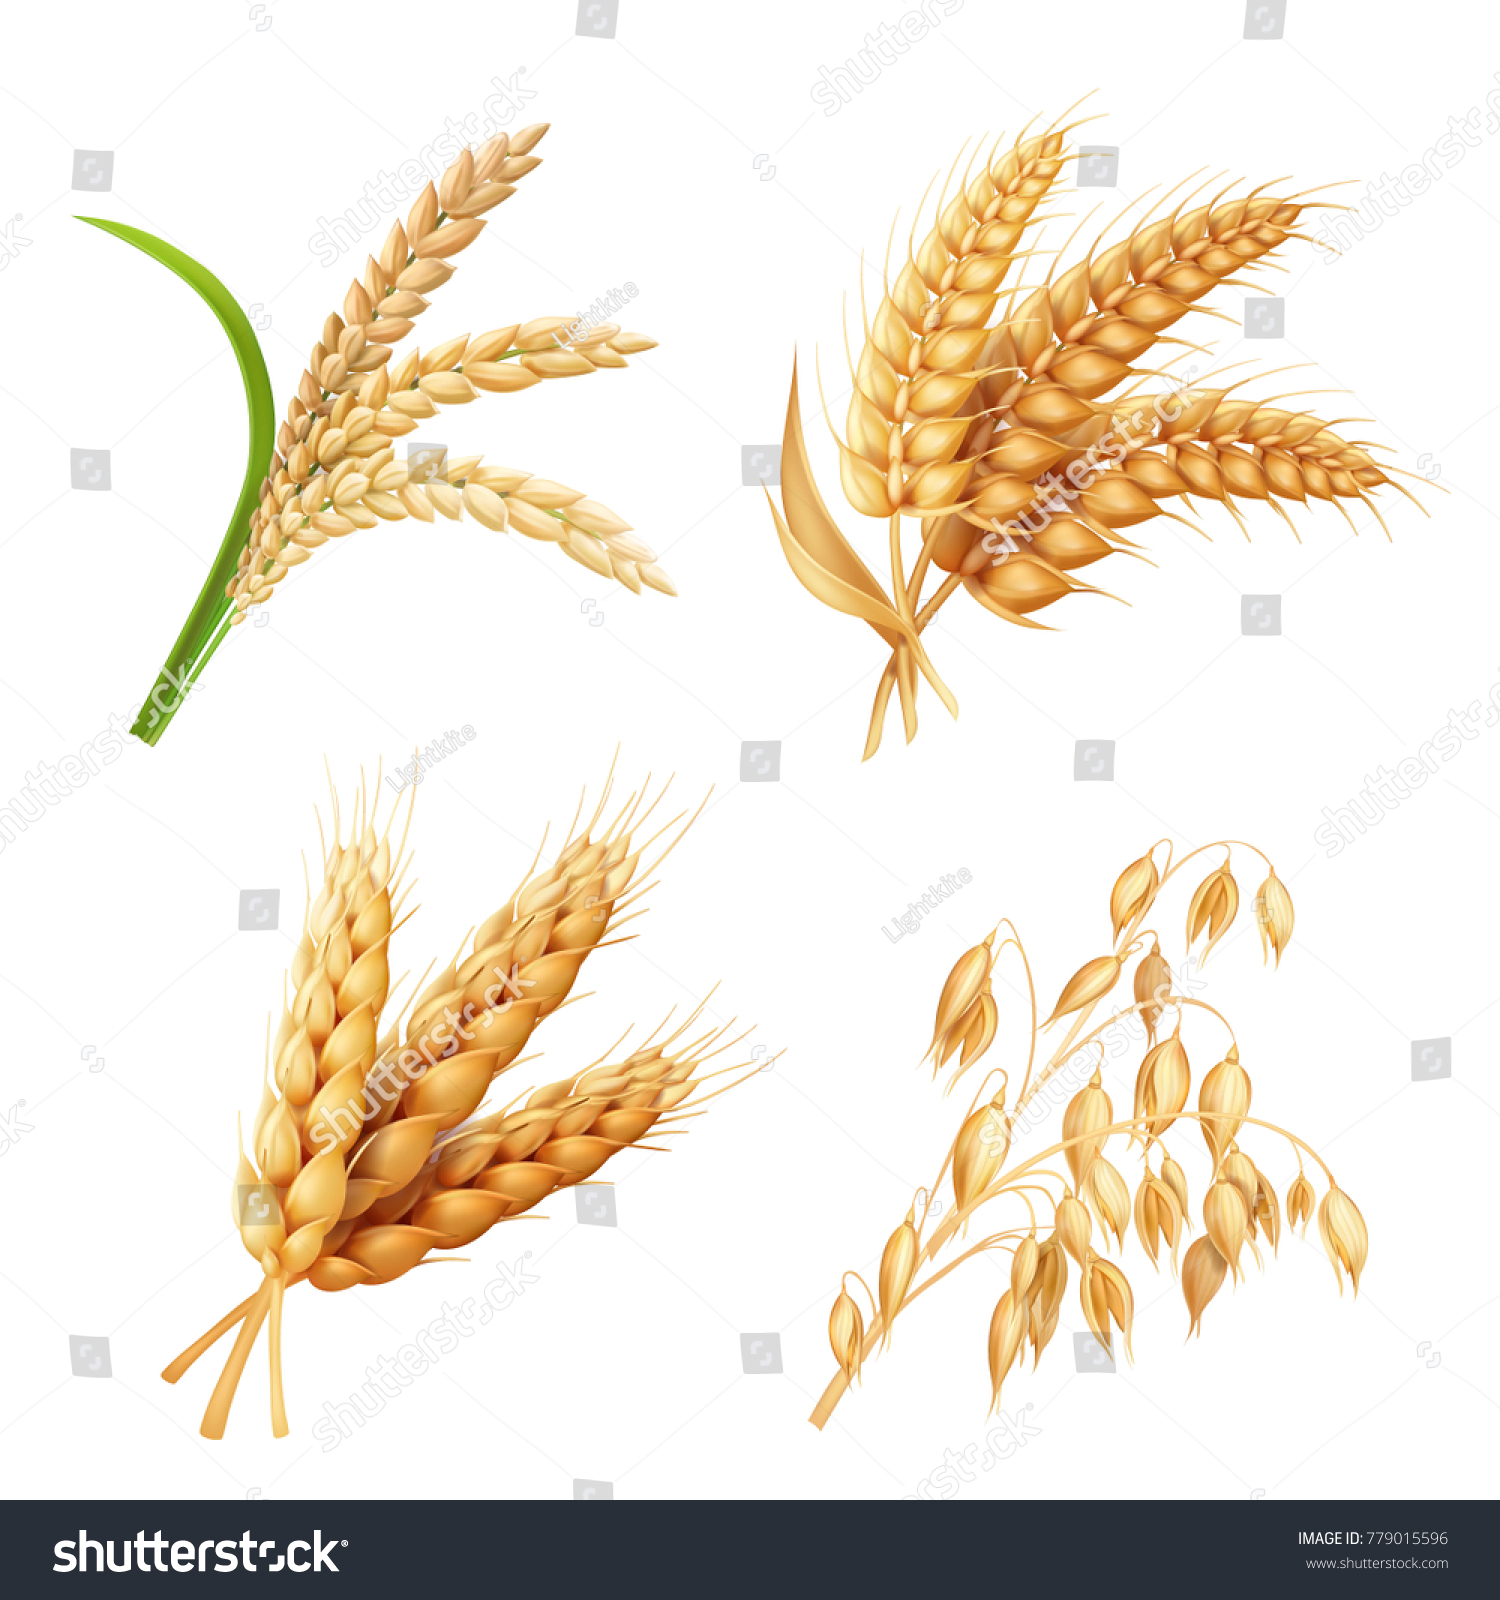 米 麦 小麦 大麦ベクター画像のリアルイラストを使った農作物 のベクター画像素材 ロイヤリティフリー